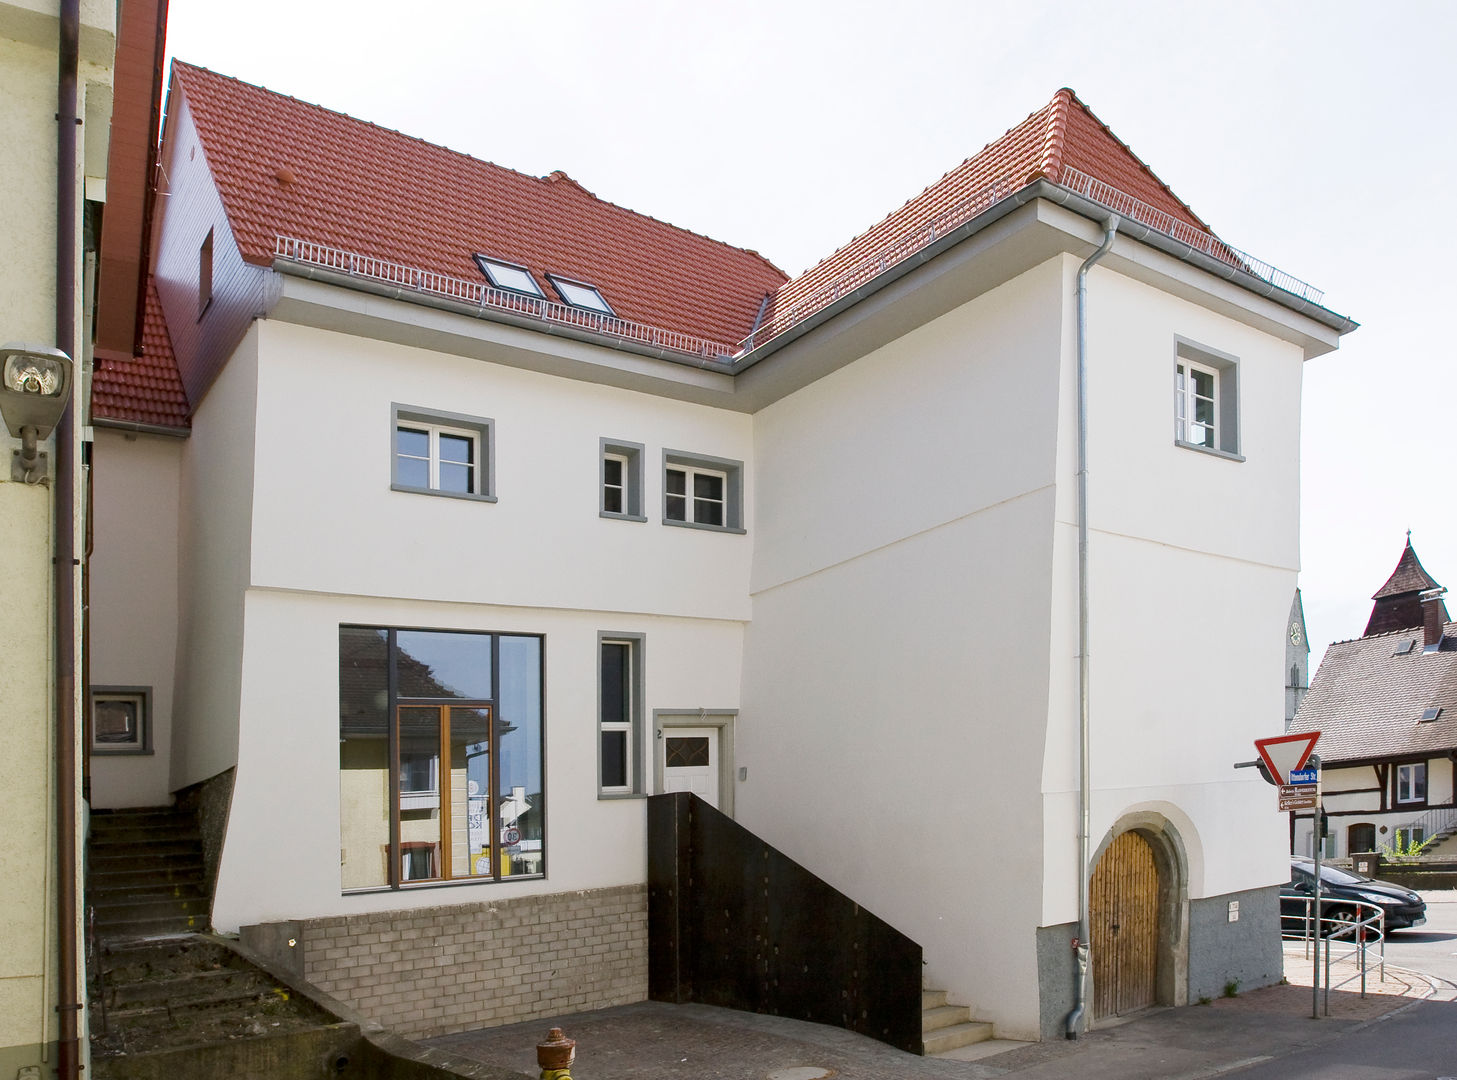 Umbau altes Bürgermeisterhaus, w3-architekten Gerhard Lallinger w3-architekten Gerhard Lallinger 房子